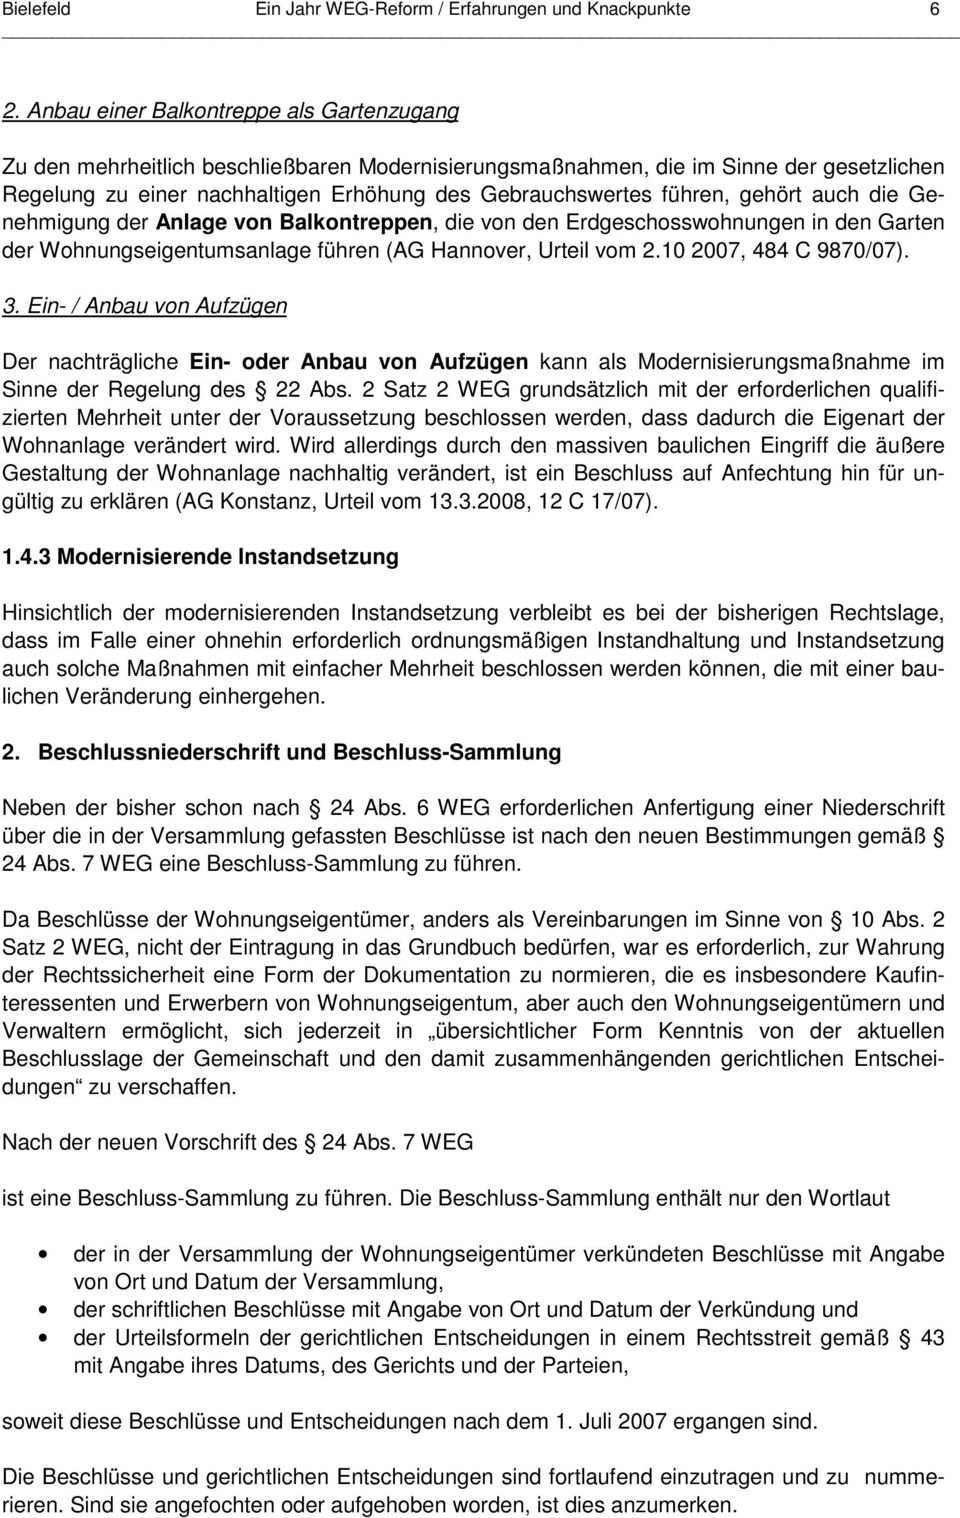 führen, gehört auch die Genehmigung der Anlage von Balkontreppen, die von den Erdgeschosswohnungen in den Garten der Wohnungseigentumsanlage führen (AG Hannover, Urteil vom 2.10 2007, 484 C 9870/07).